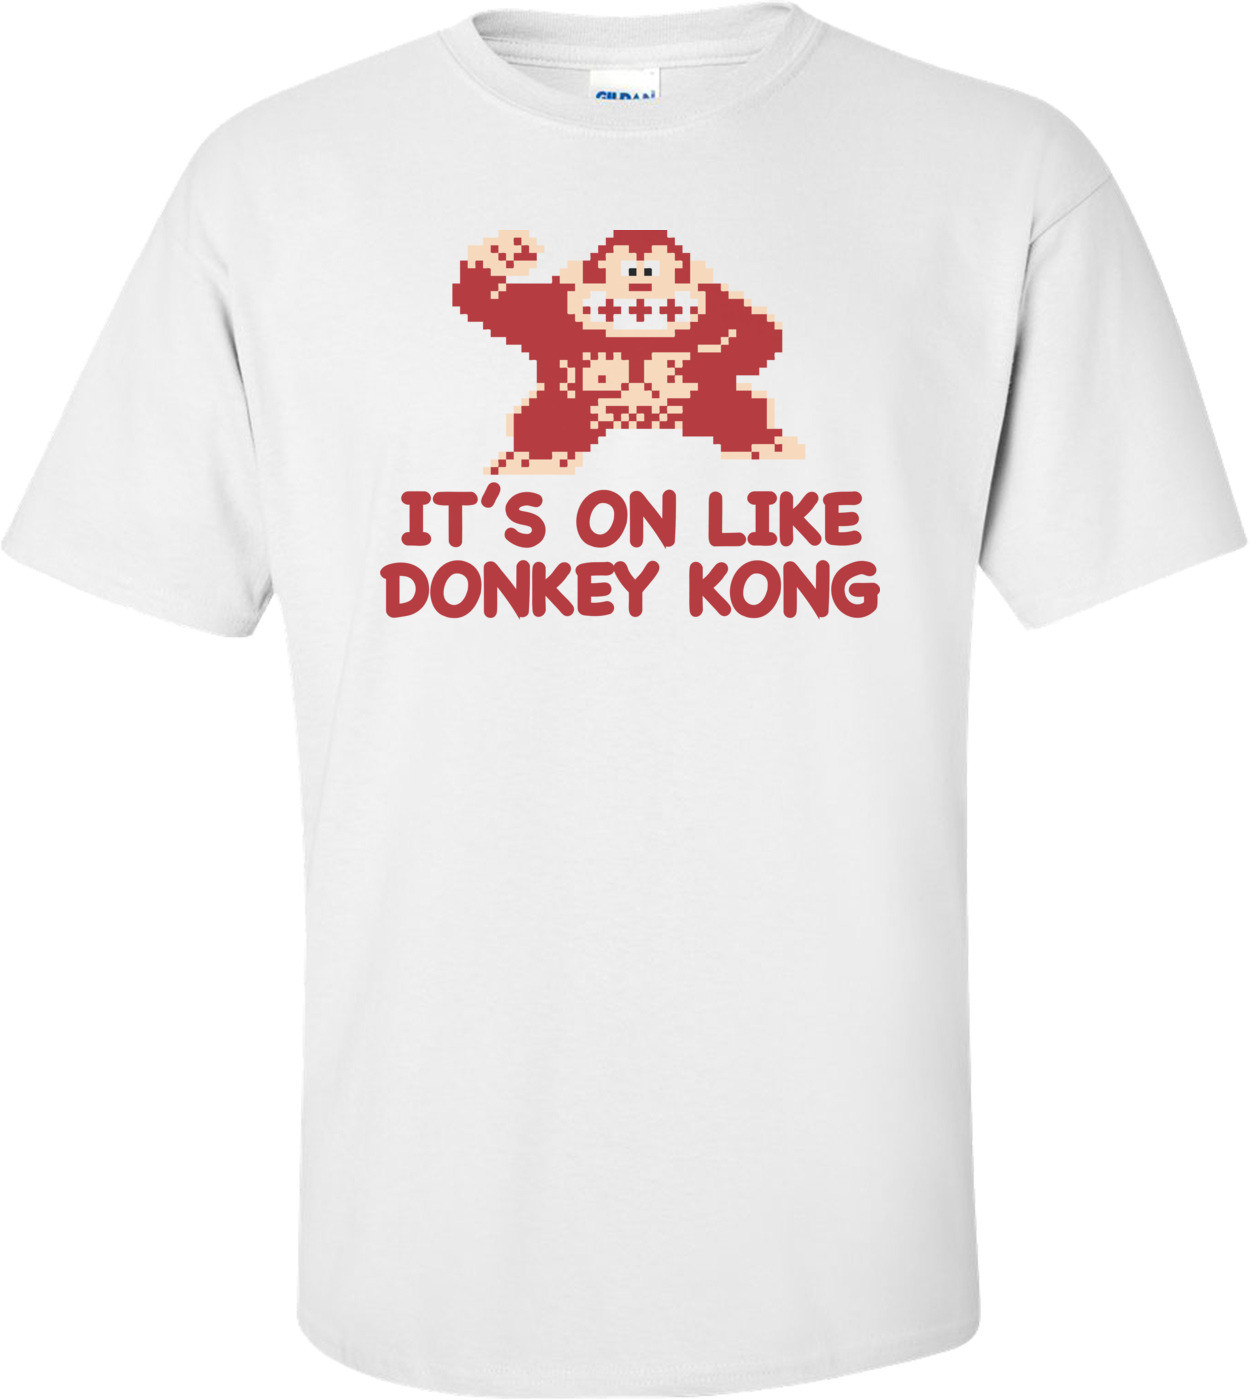 It's On Like Donkey Kong T-shirt